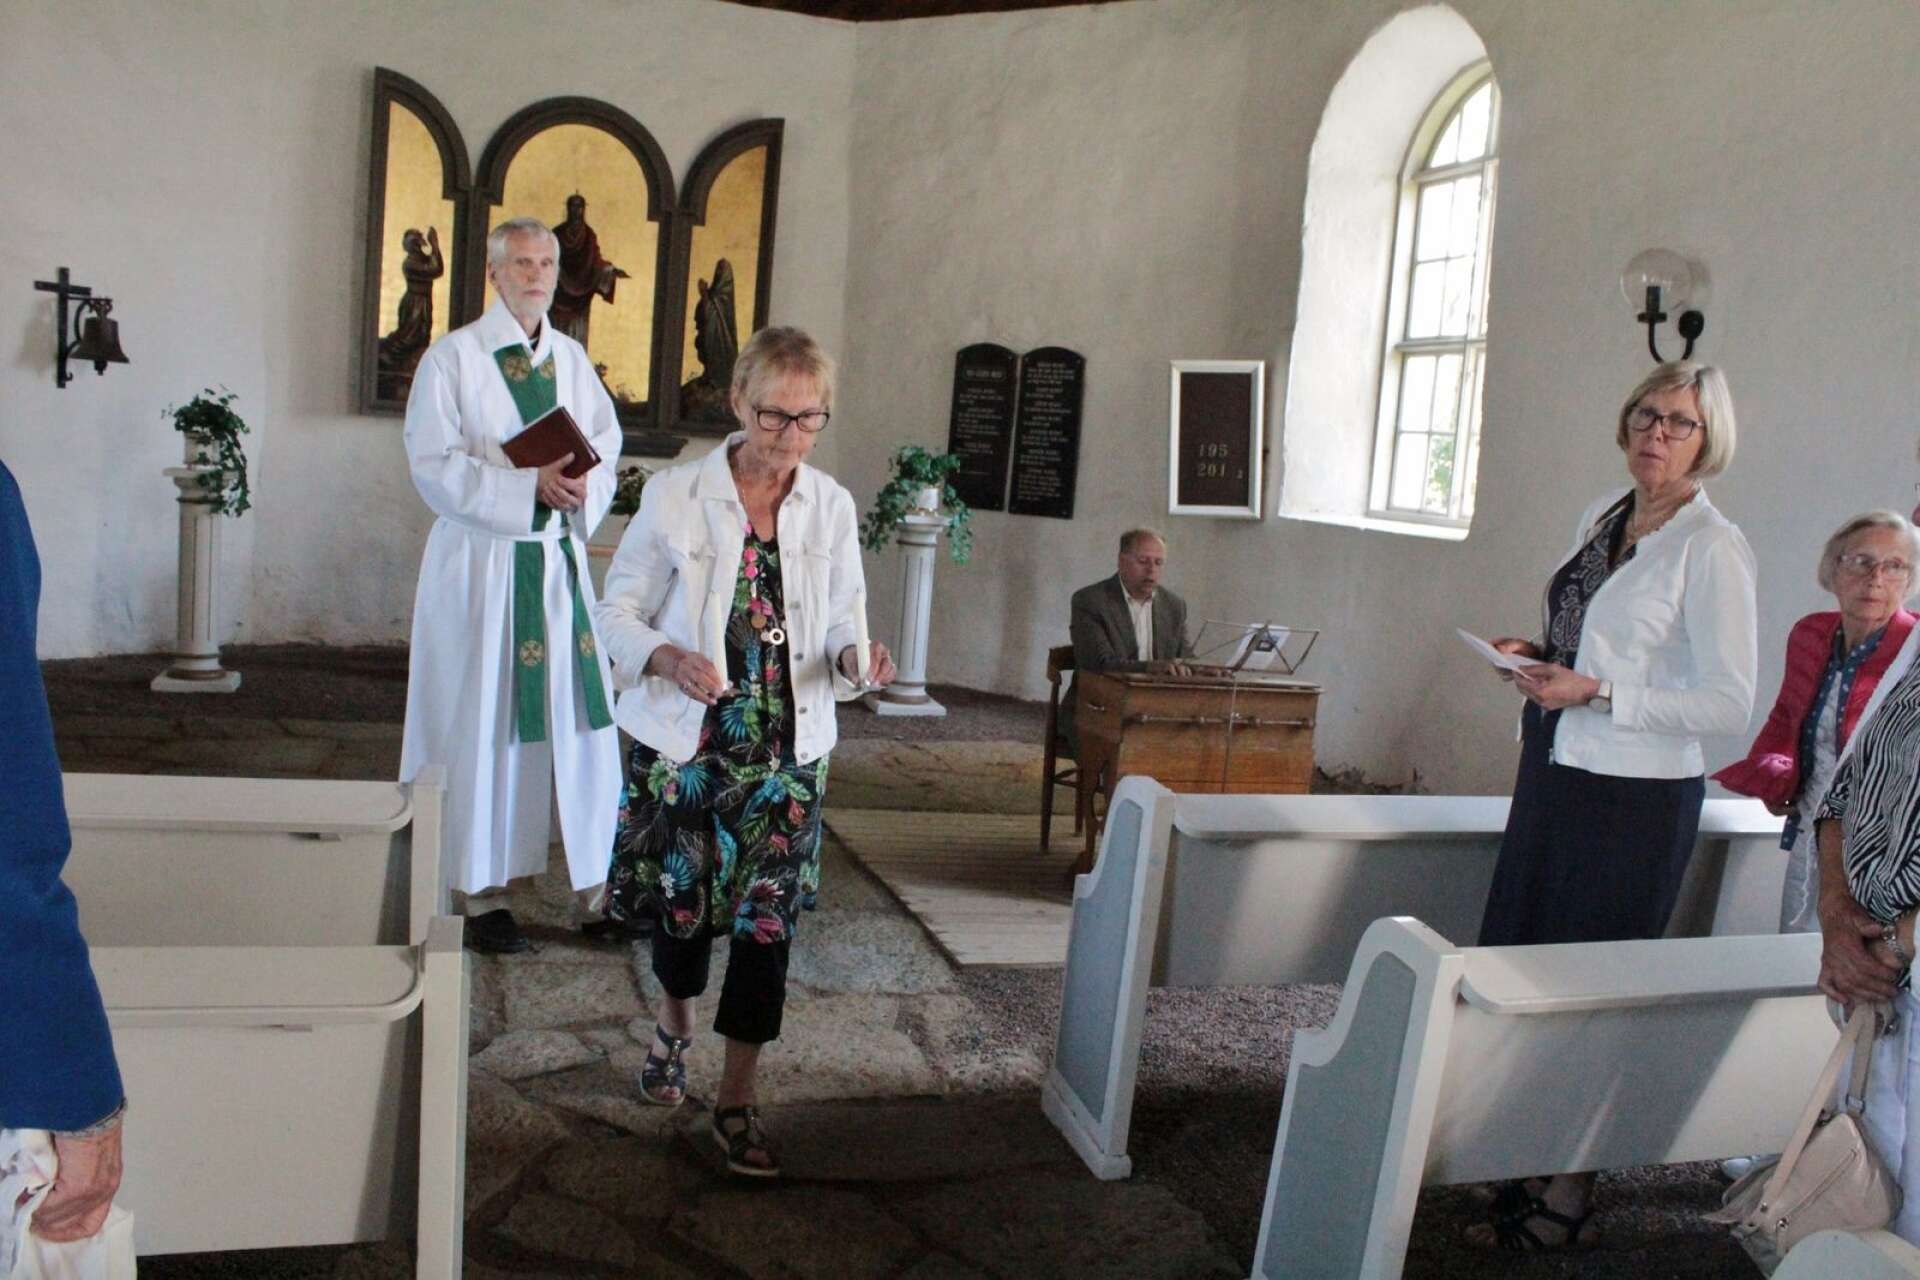 En avslutande gudstjänst hölls i lördags i Tösse gamla kyrka innan den togs ur bruk för att säljas. Gudstjänsten förrättades av kontraktsprost Thomas Holmström och altarljusen släcktes och bars ut.